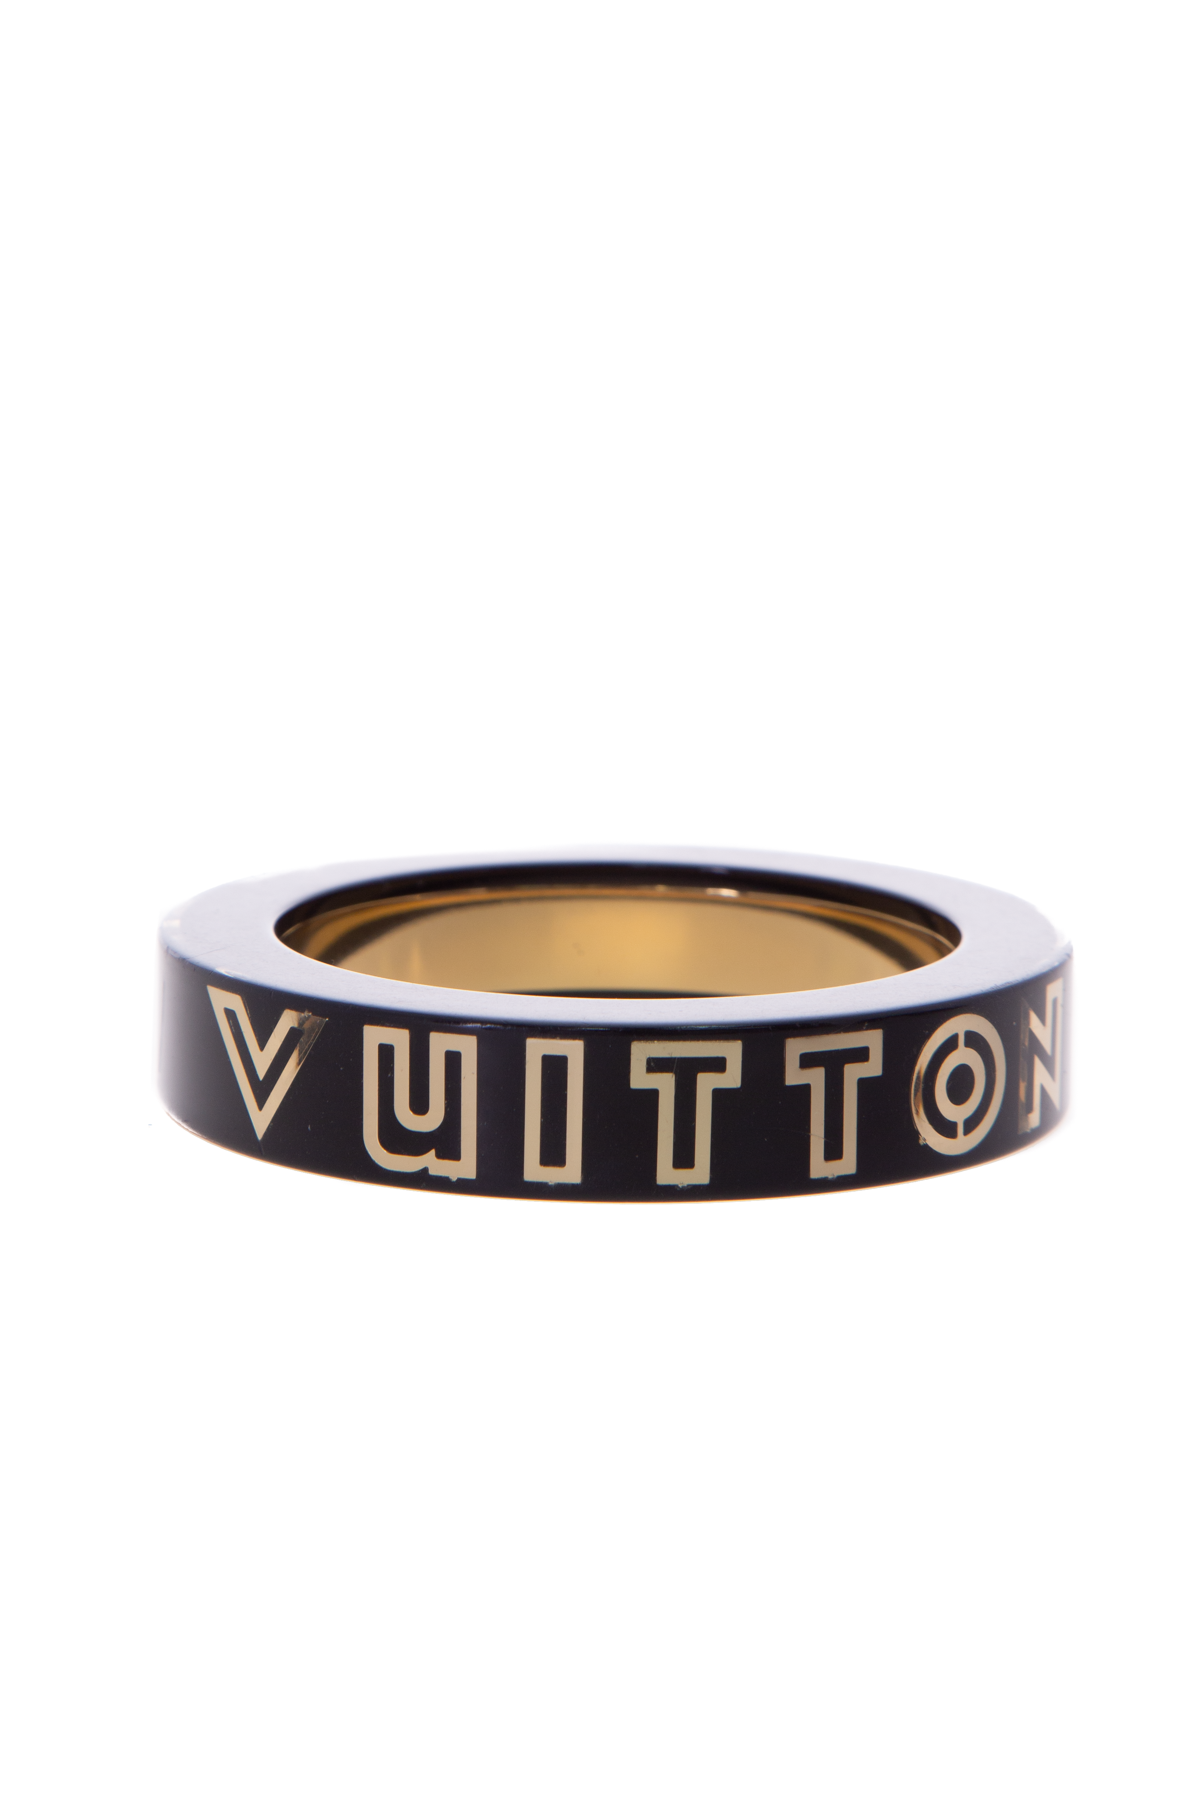 Louis Vuitton Wanted Bracelet